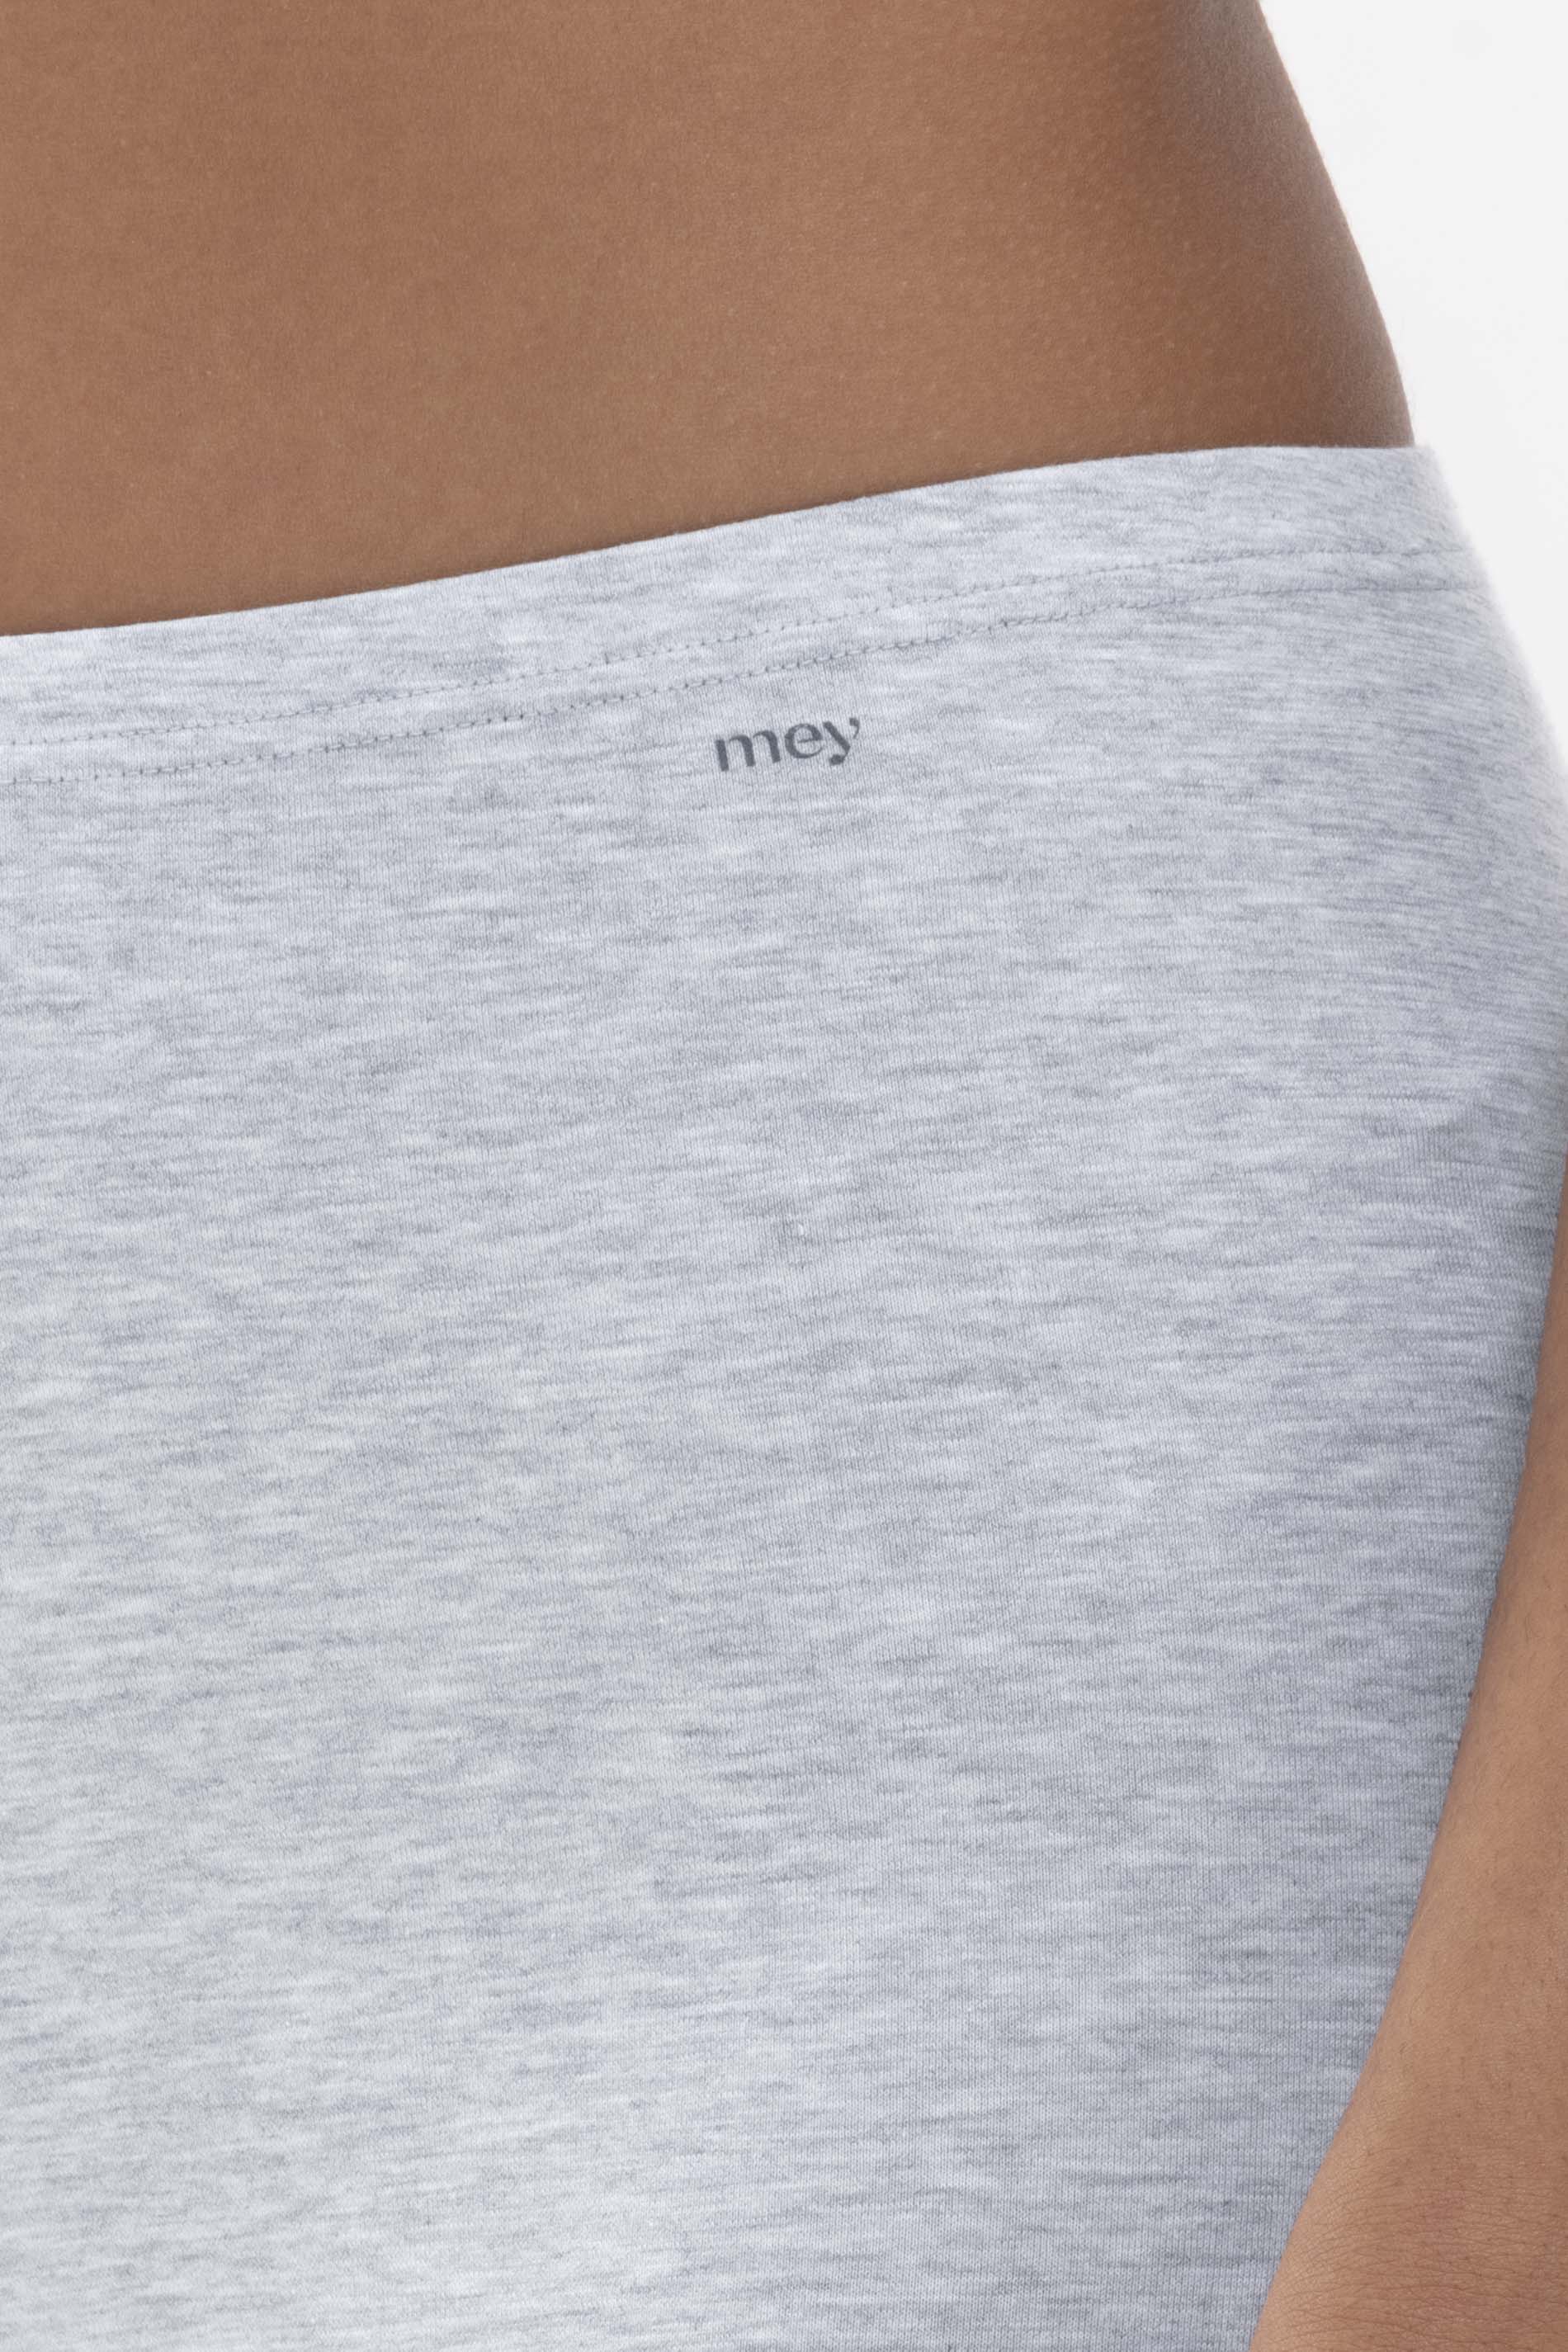 Long briefs Light Grey Melange Serie Cotton Pure Detail View 01 | mey®